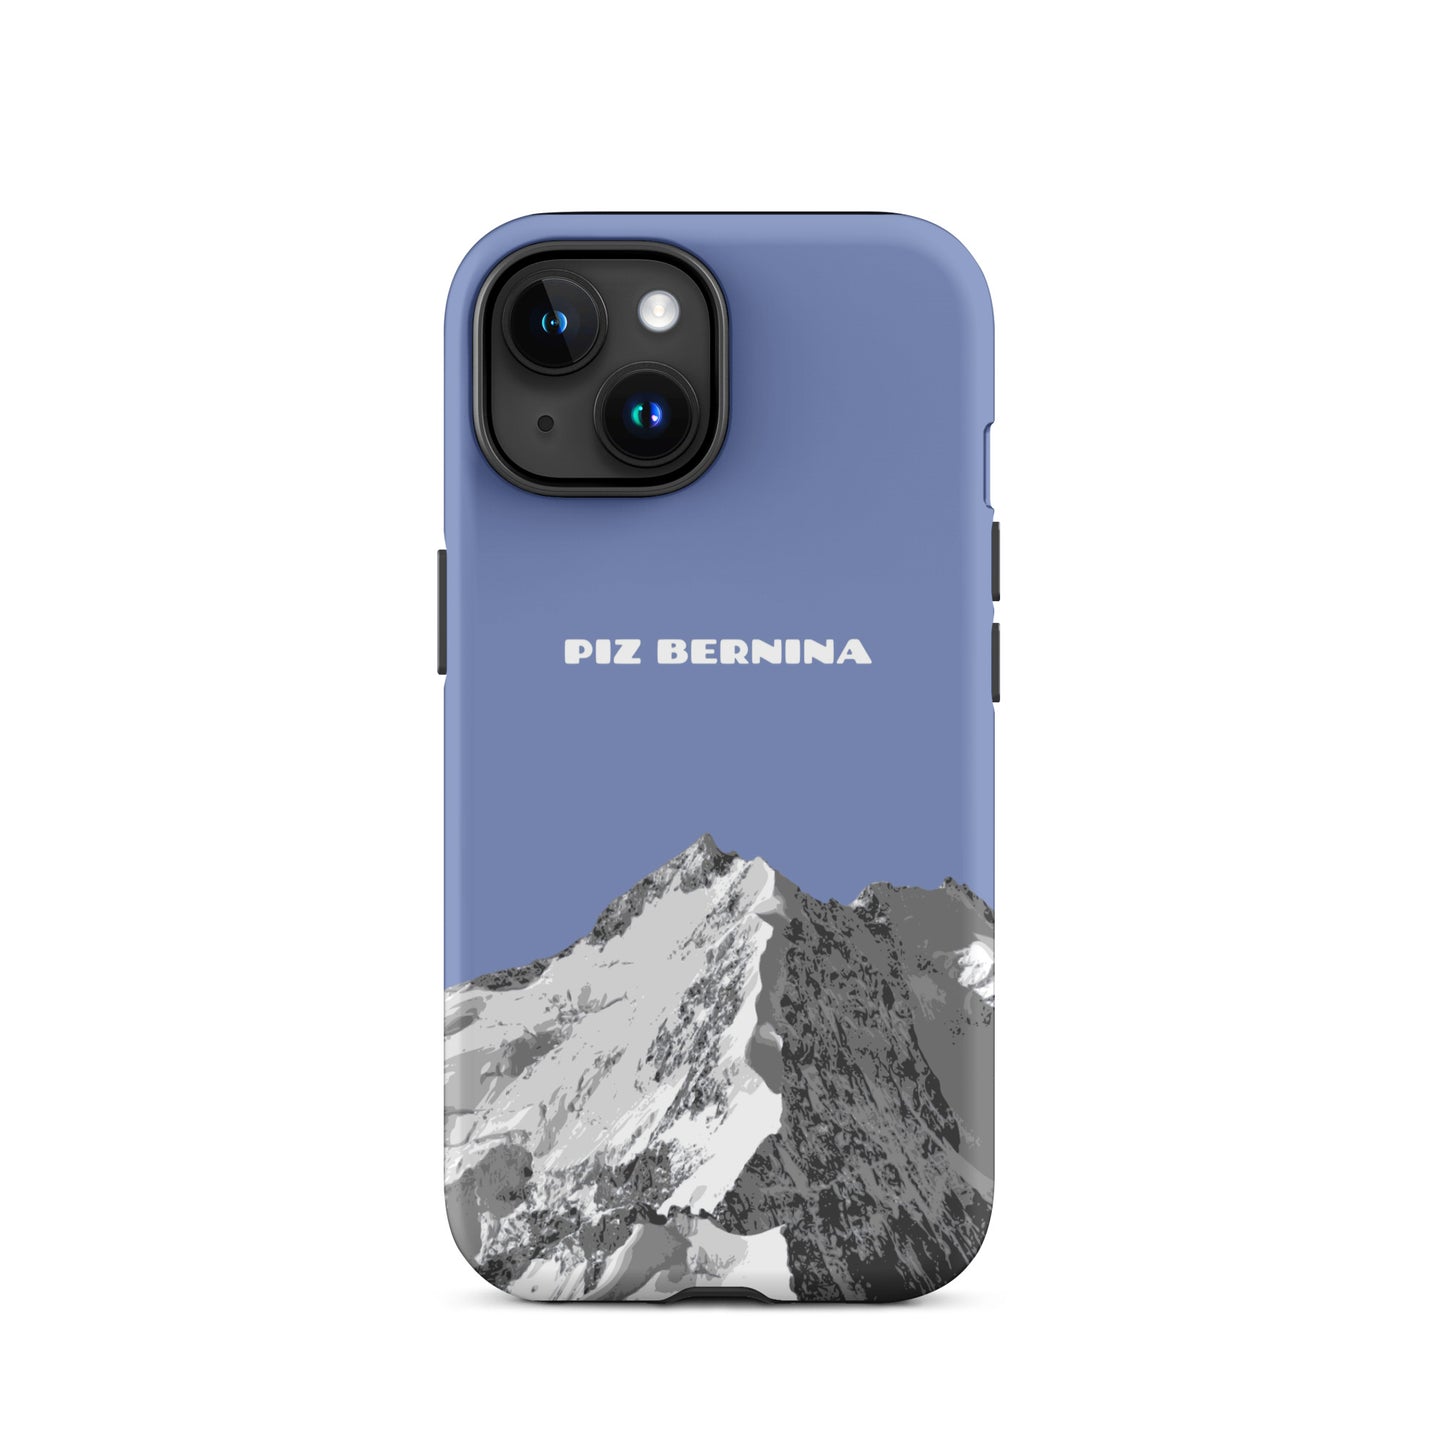 Hülle für das iPhone 15 von Apple in der Farbe Pastellblau, dass den Piz Bernina in Graubünden zeigt.